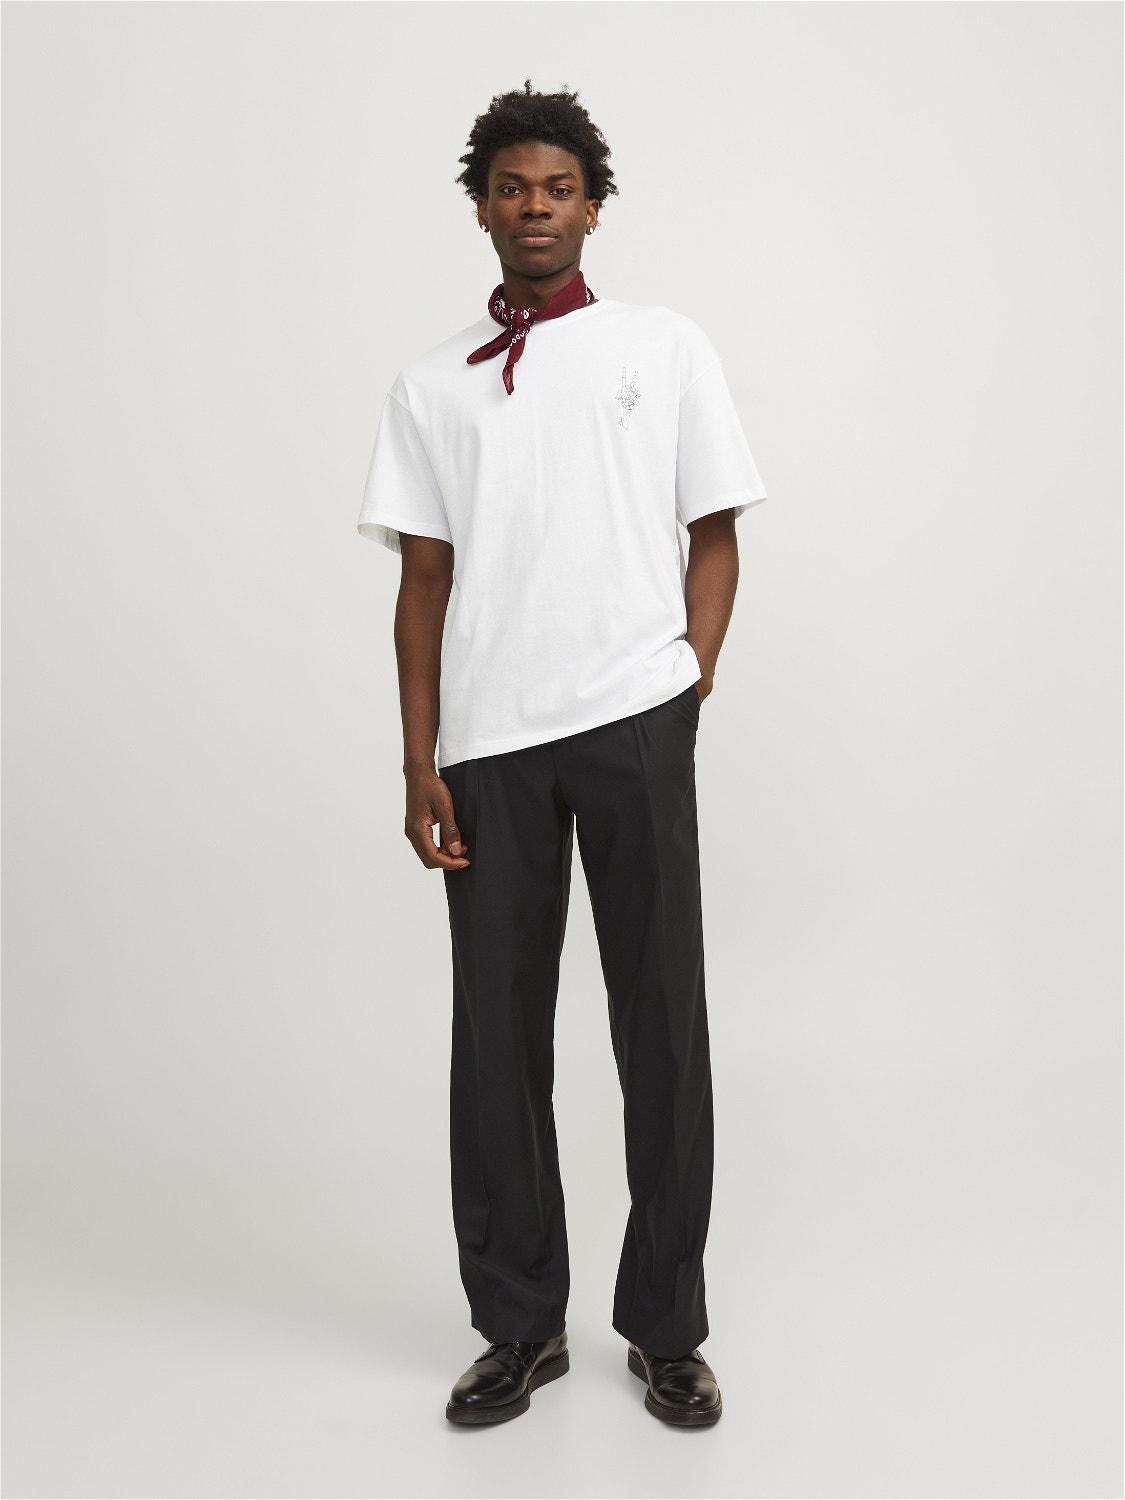 Jack & Jones T-shirt Estampar Decote Redondo -Bright White - 12267274